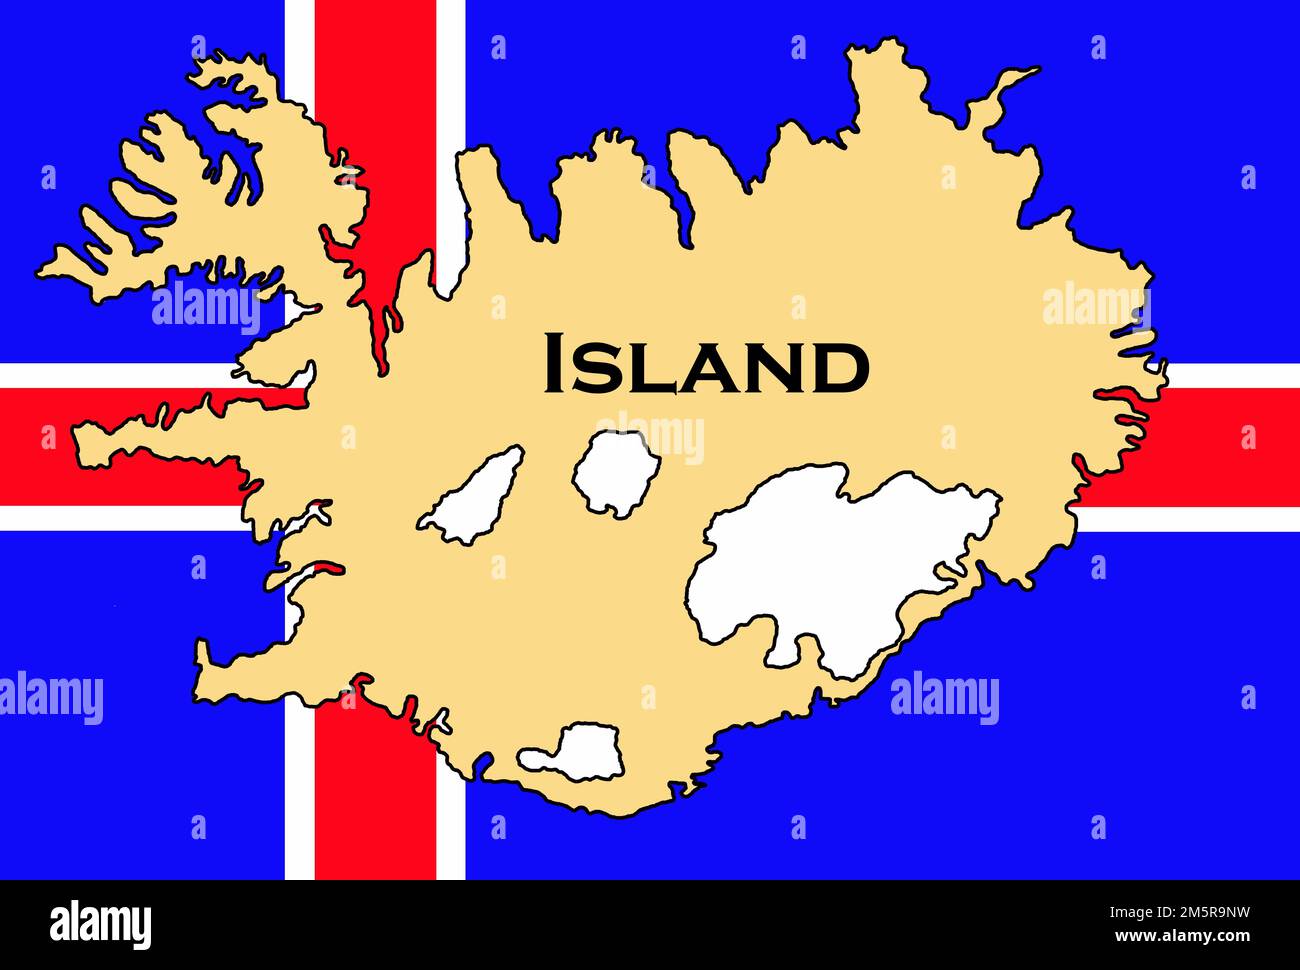 Flagge von Island / flag of iceland / Flagge von Island mit Landkarte / iceland flag with map Stock Photo